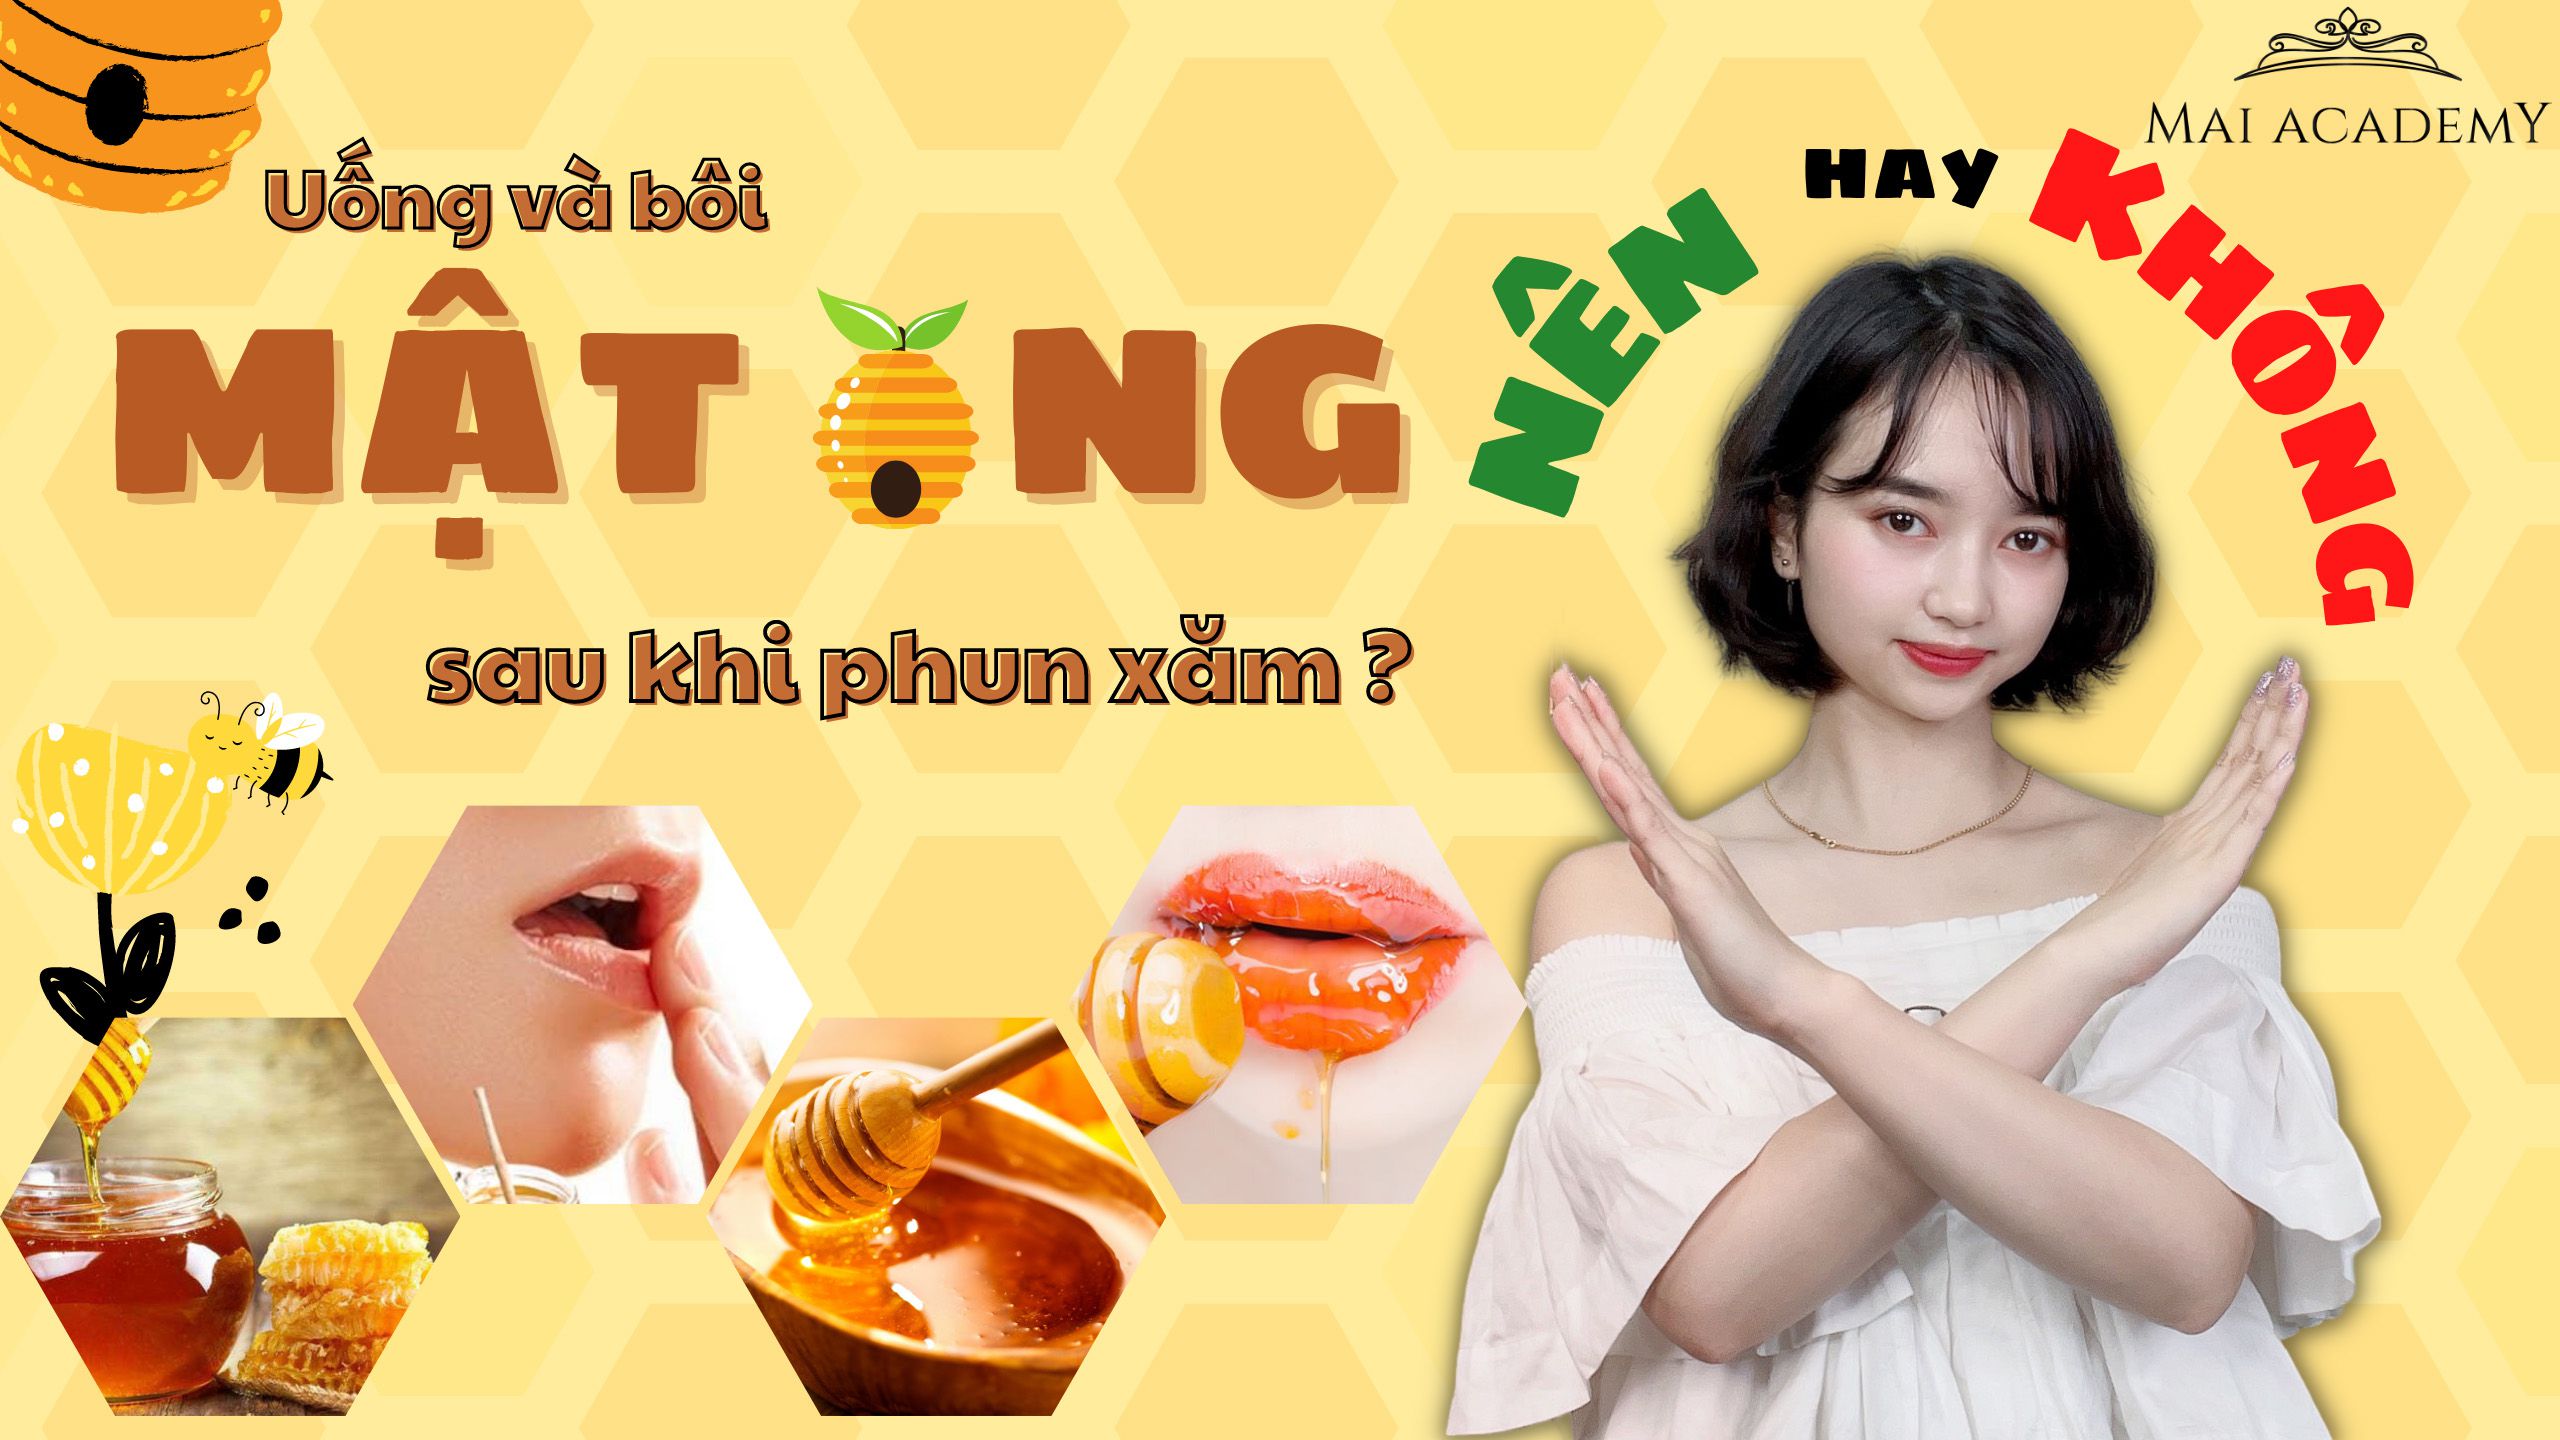 Bôi mật ong sau phun môi Có nên hay không  Chance Kim  Phun xăm tự nhiên